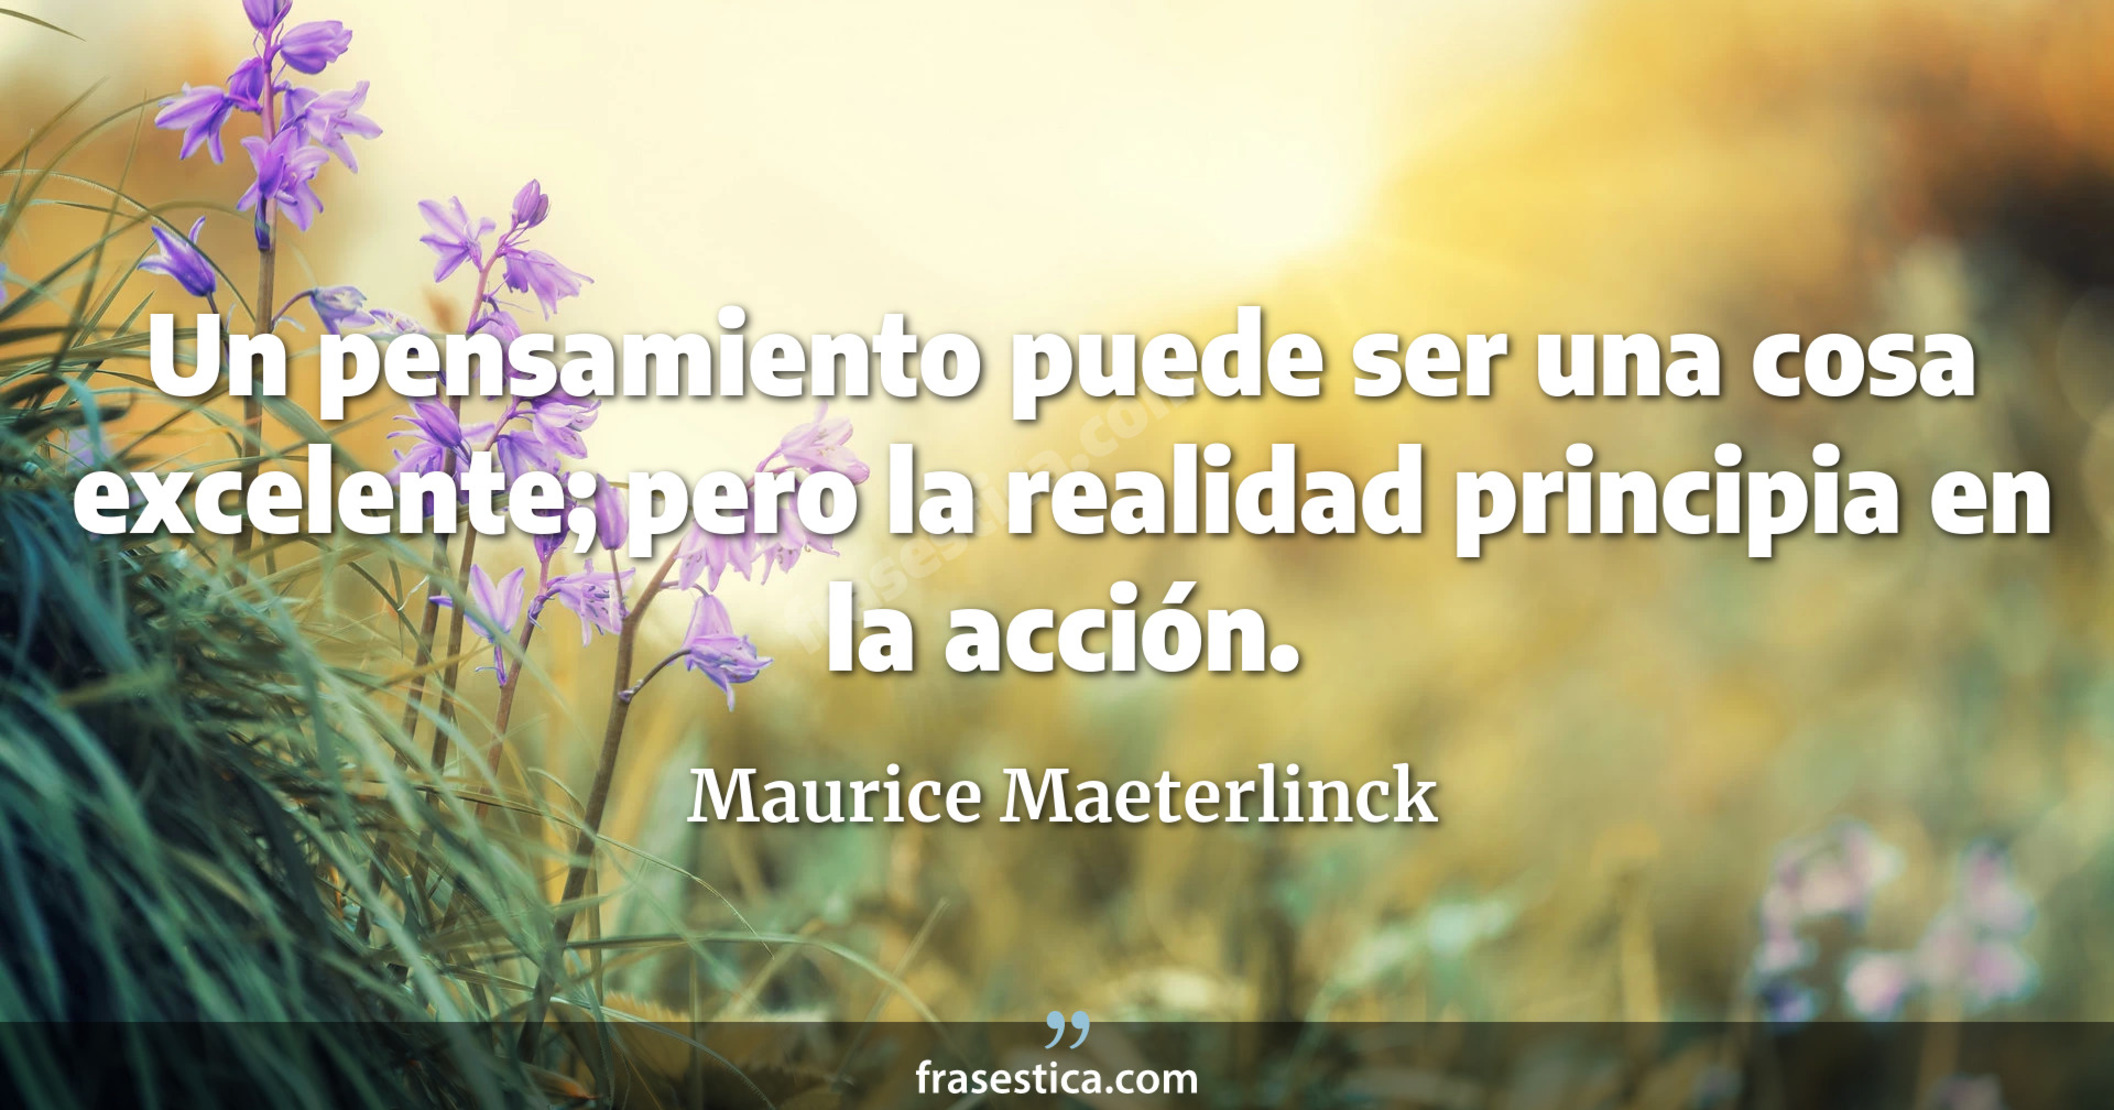 Un pensamiento puede ser una cosa excelente; pero la realidad principia en la acción. - Maurice Maeterlinck